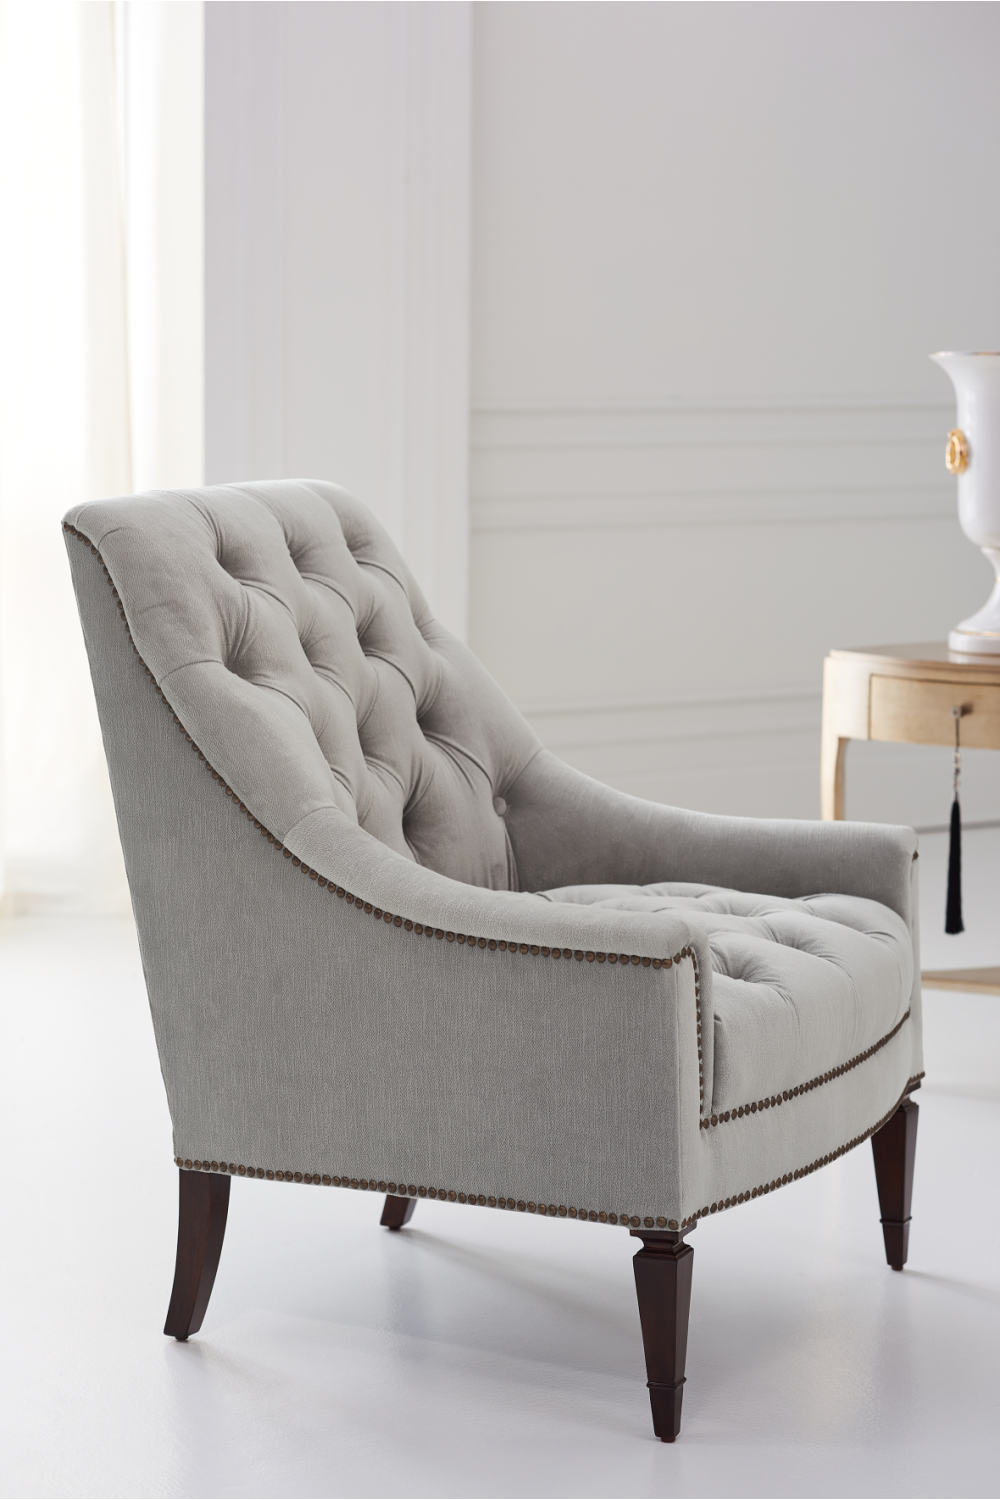 Tufted Lounge Chair | Caracole Classic Elegance | Oroa.com